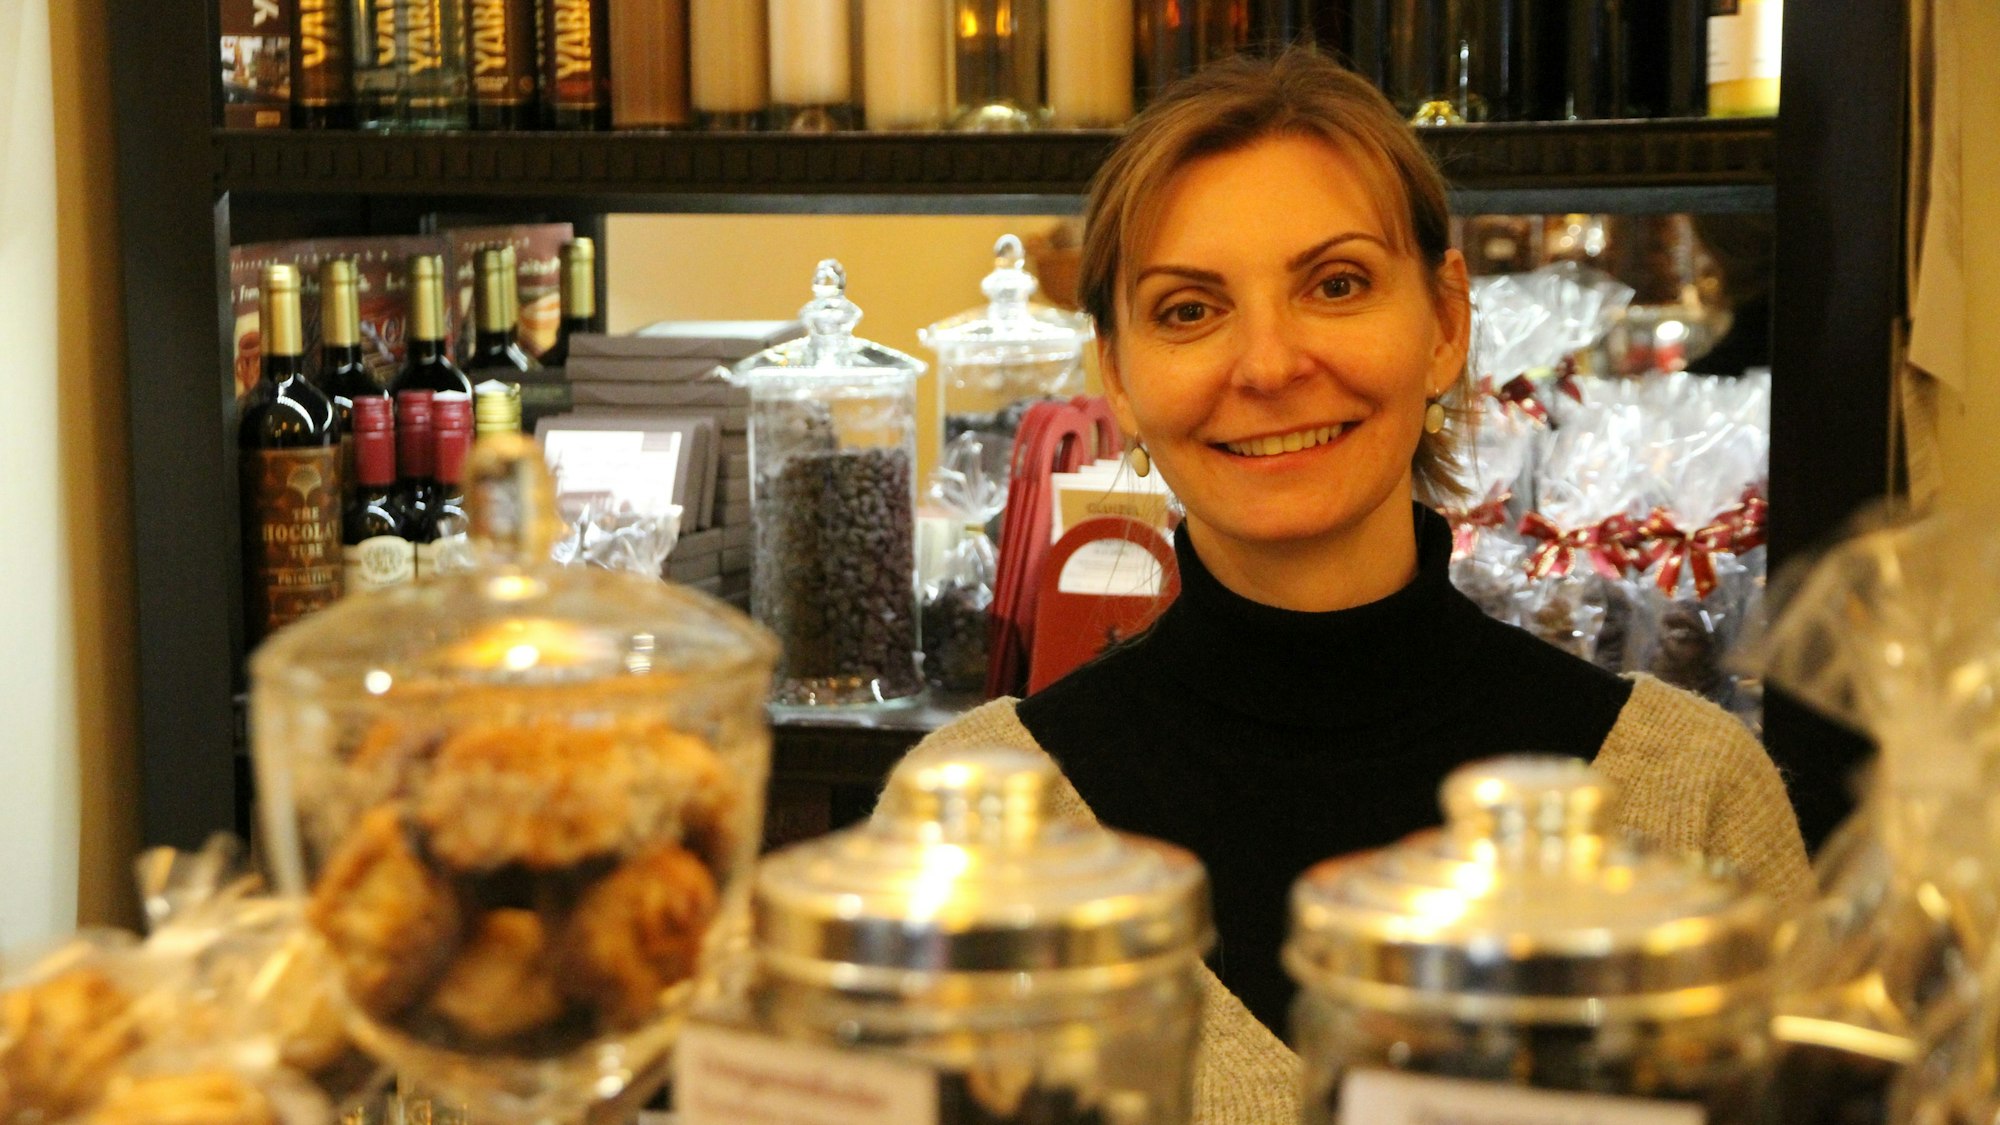 Eine Frau an der Theke ihres Geschäfts mit Schokolade und anderen Süßigkeiten